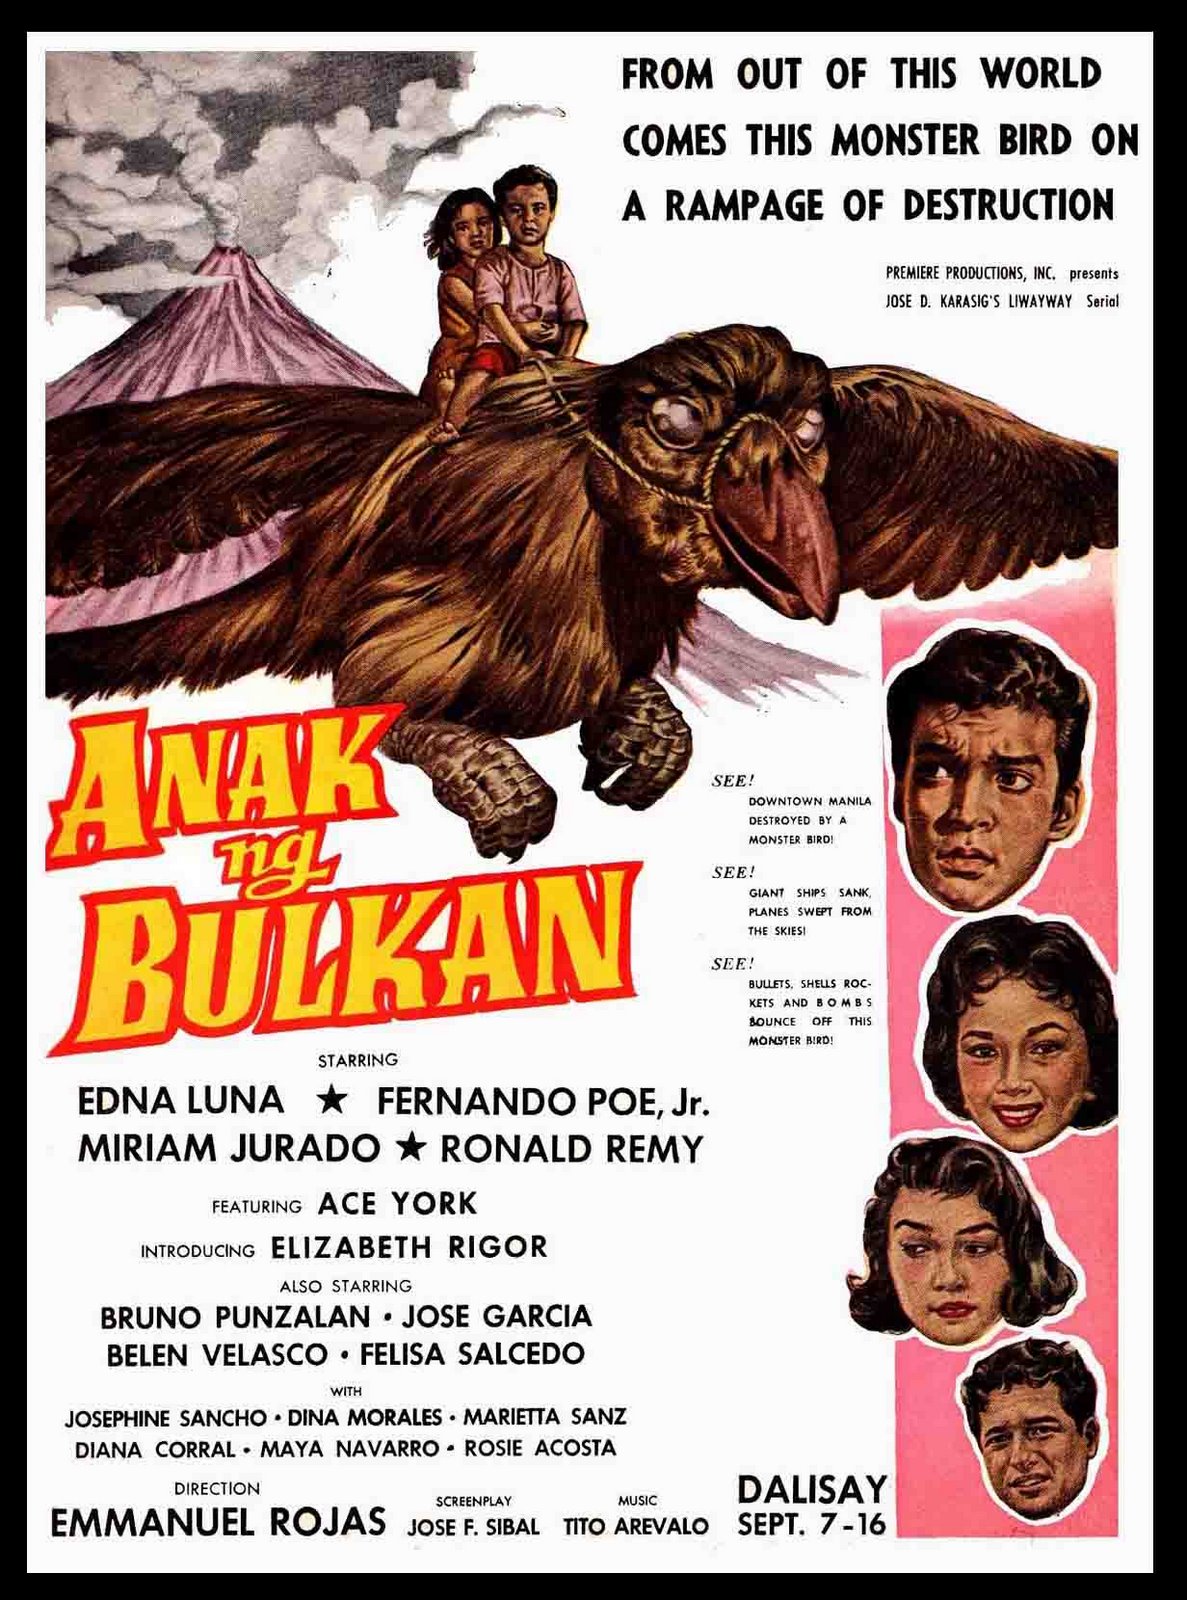 Anak ng bulkan (1959) Screenshot 1 